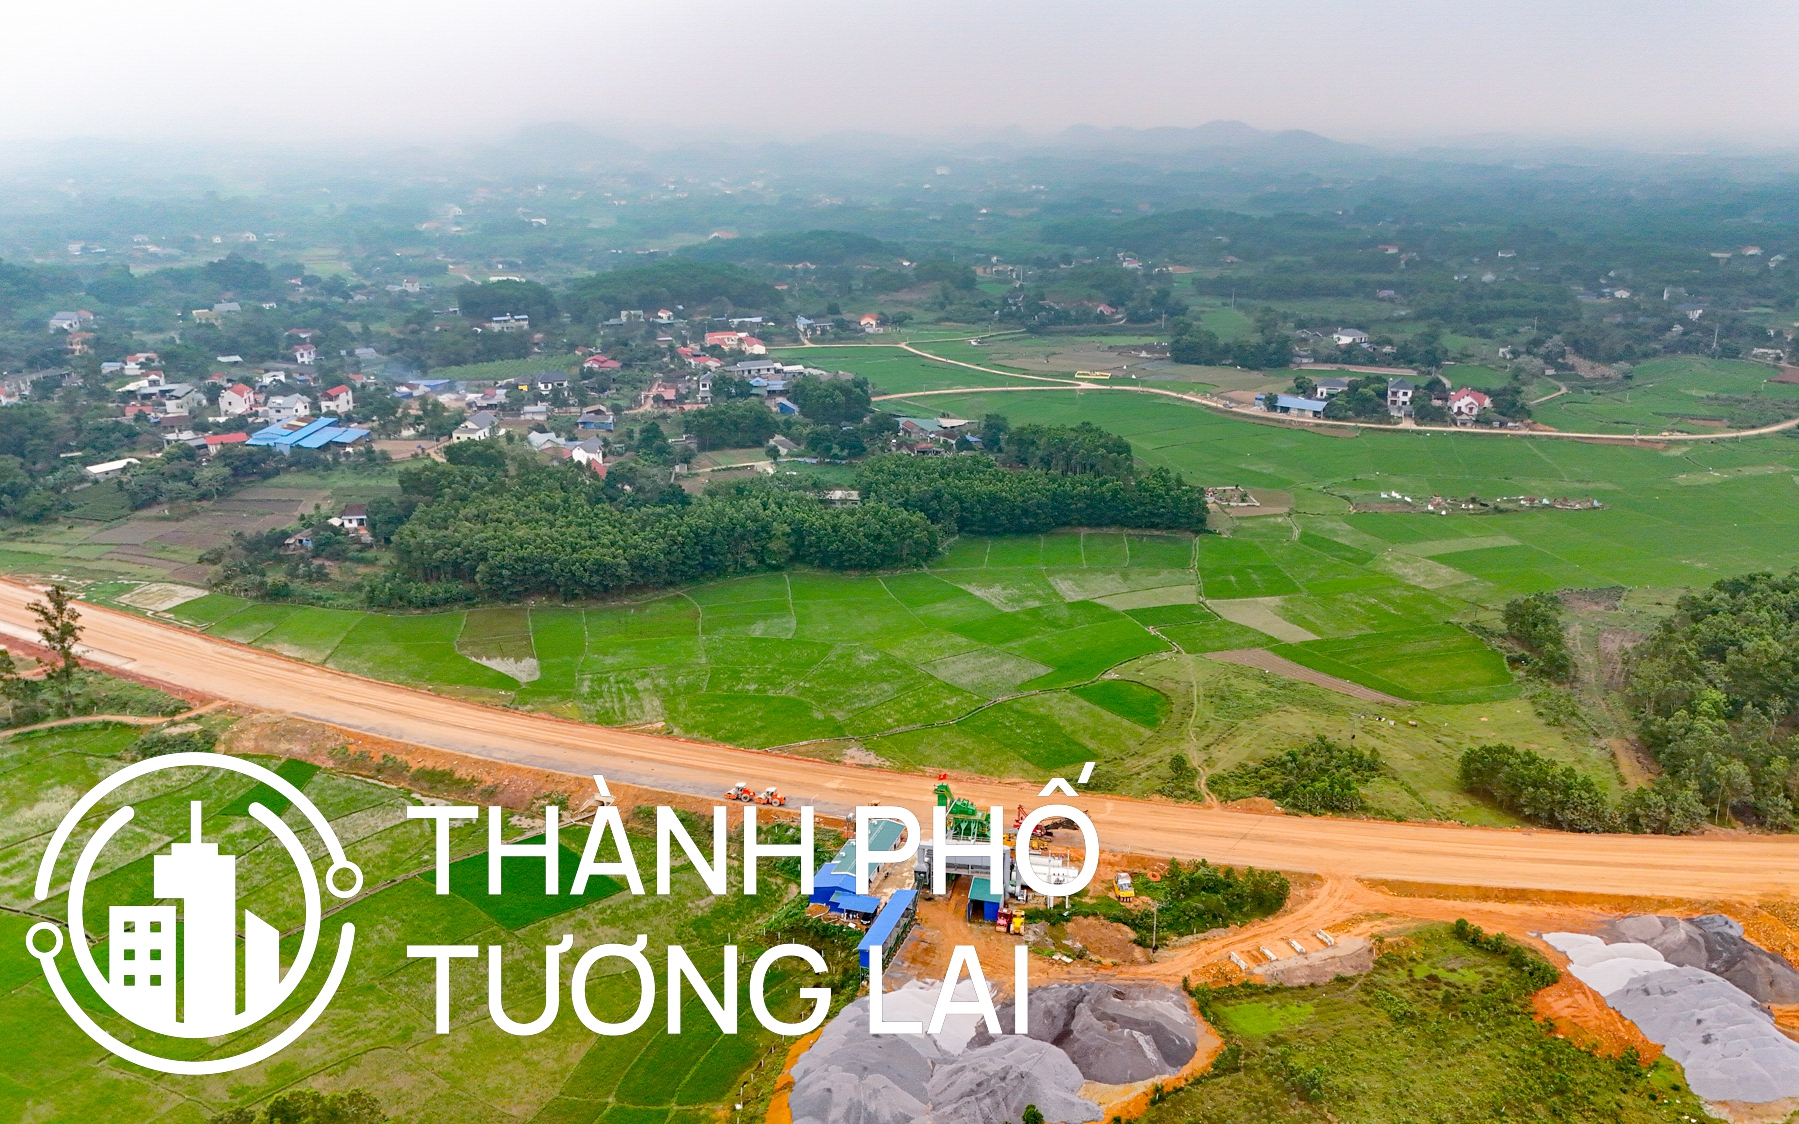 Khu vực sẽ trở thành Khu công nghiệp - Đô thị - Dịch vụ lớn nhất tỉnh Thái Nguyên, gần bằng tổng diện tích khu công nghiệp toàn tỉnh hiện nay cộng lại